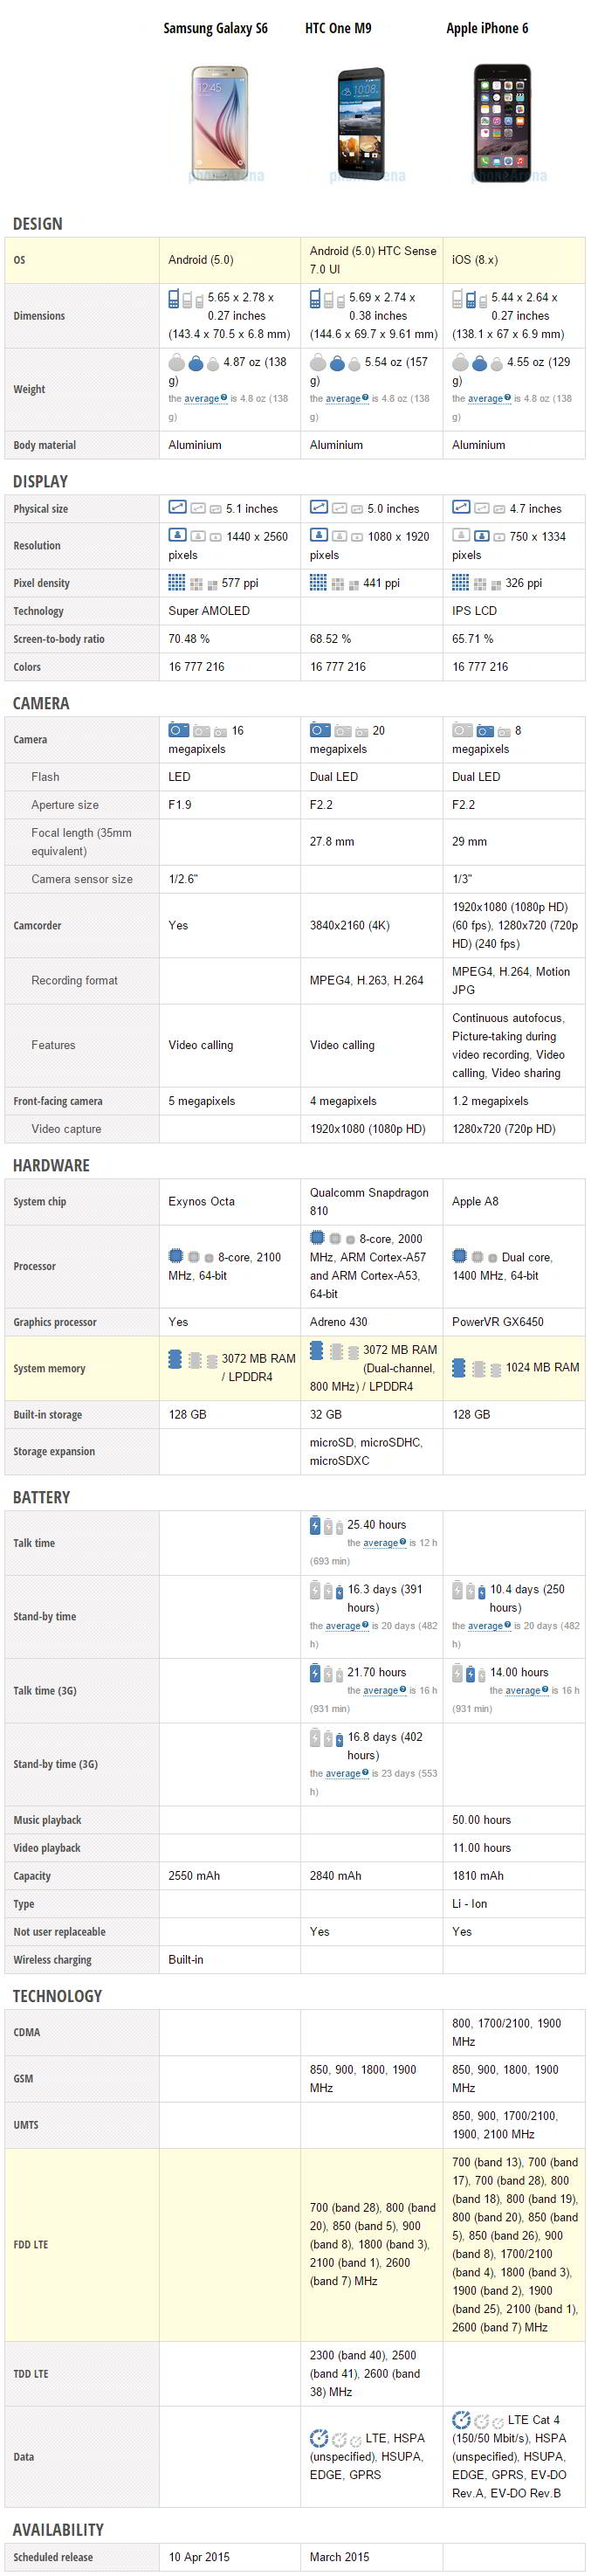 Vergelijking van specificaties van Samsung Galaxy S6 versus HTC One M9 versus Apple iPhone 6